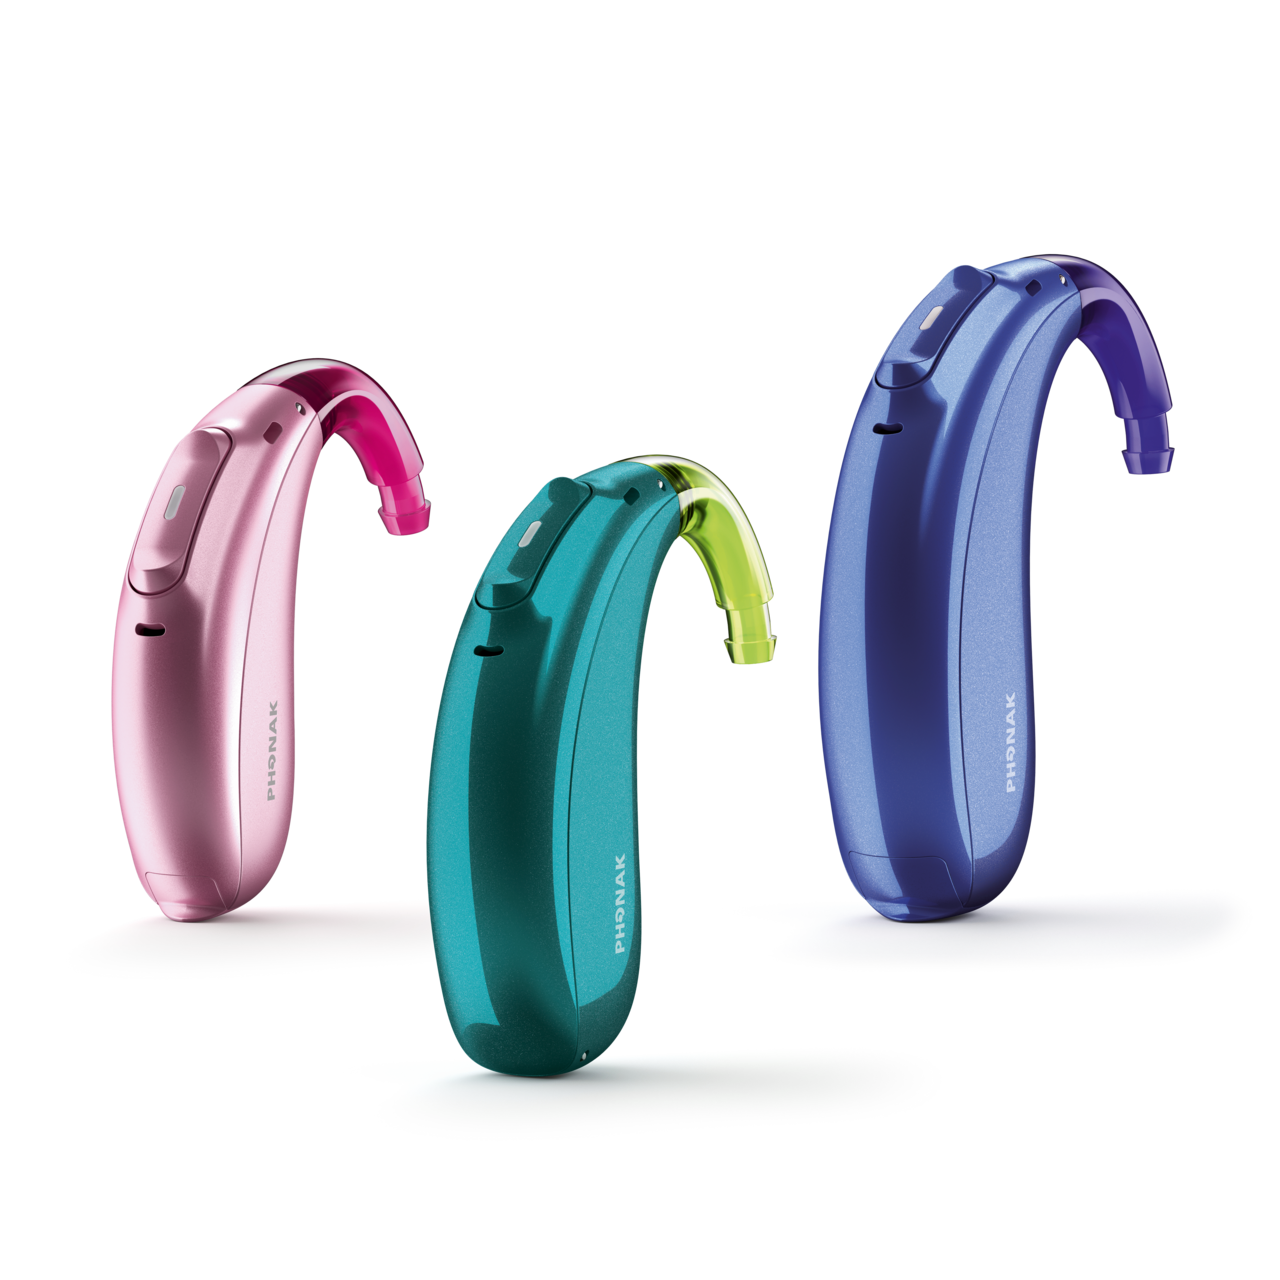 Tre apparecchi acustici Phonak Sky M in tre diversi colori: rosa, verde acqua e blu royal.